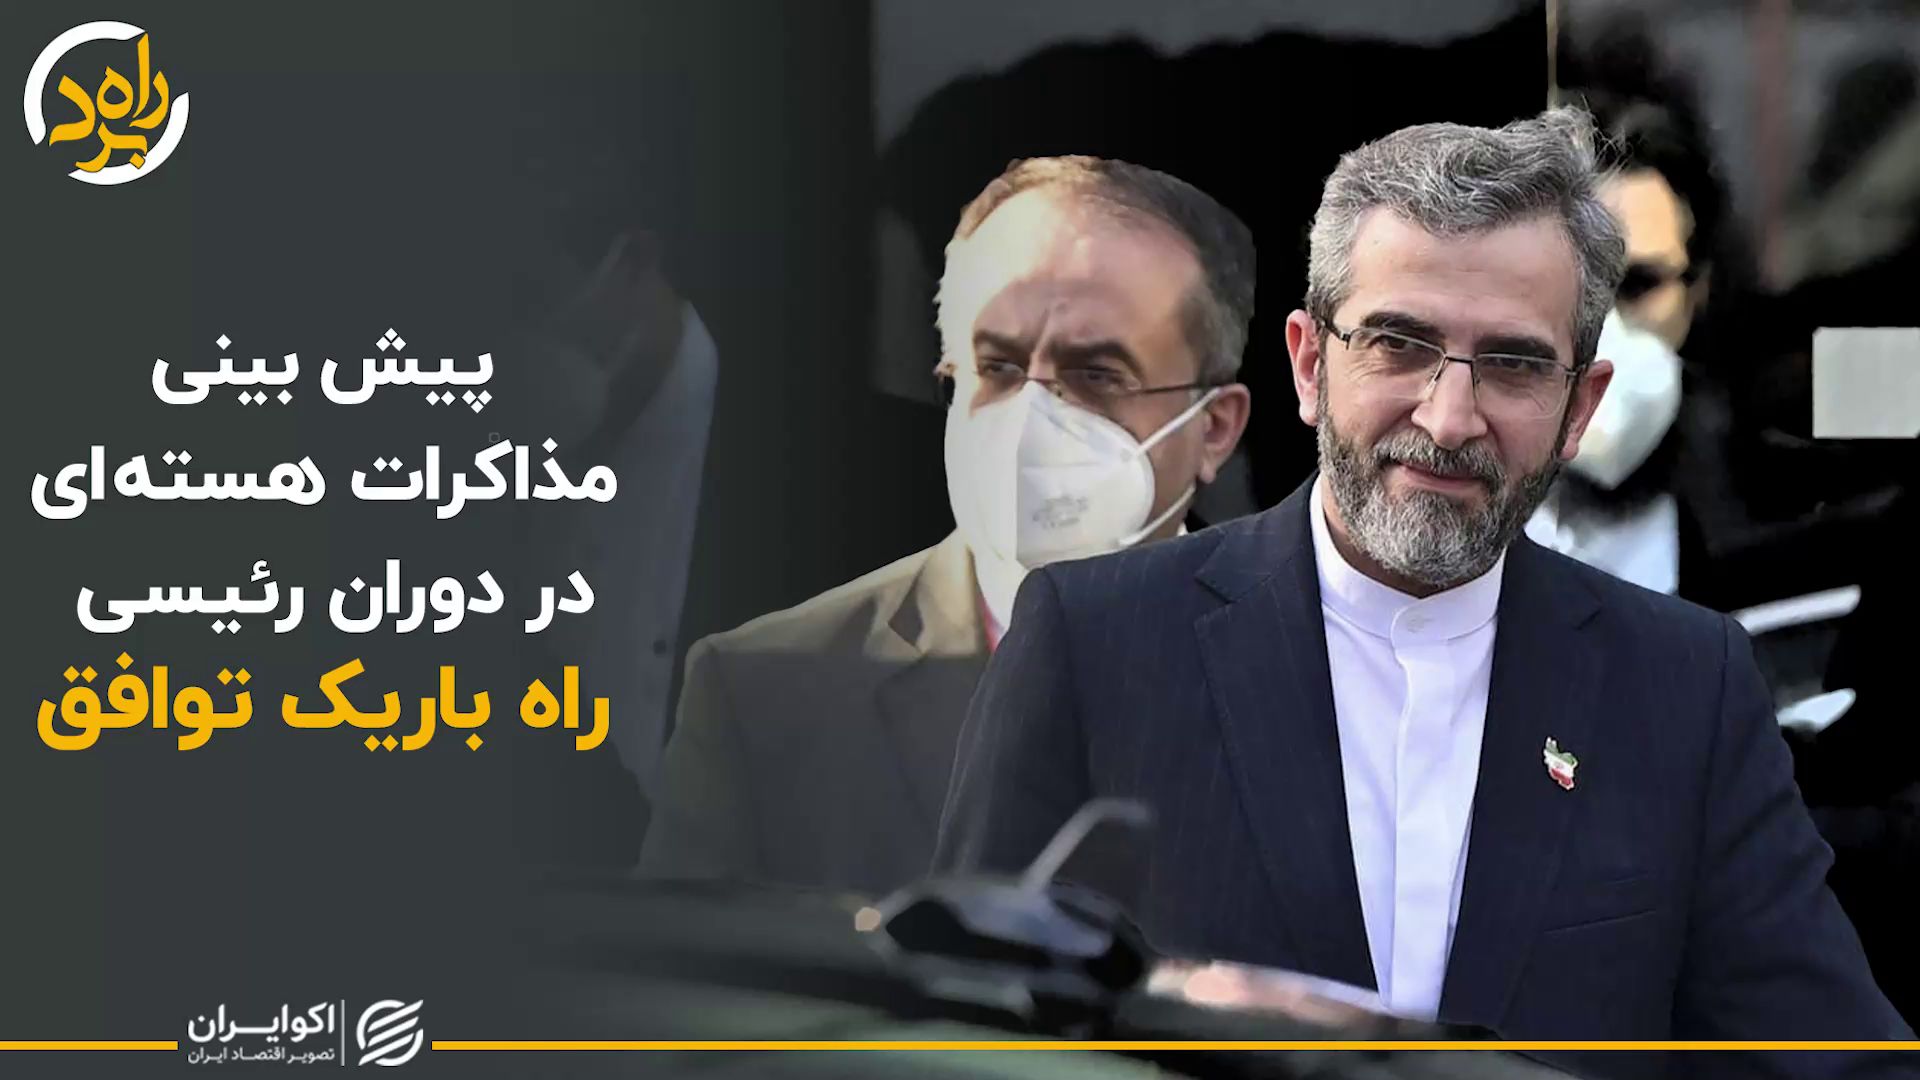 به رسمیت شناختن حق غنی سازی و حق موشکی و حق منطقه ای در ایران حق کسانی است که قدرت به رسمیت شناختن این حق را داشته باشند 